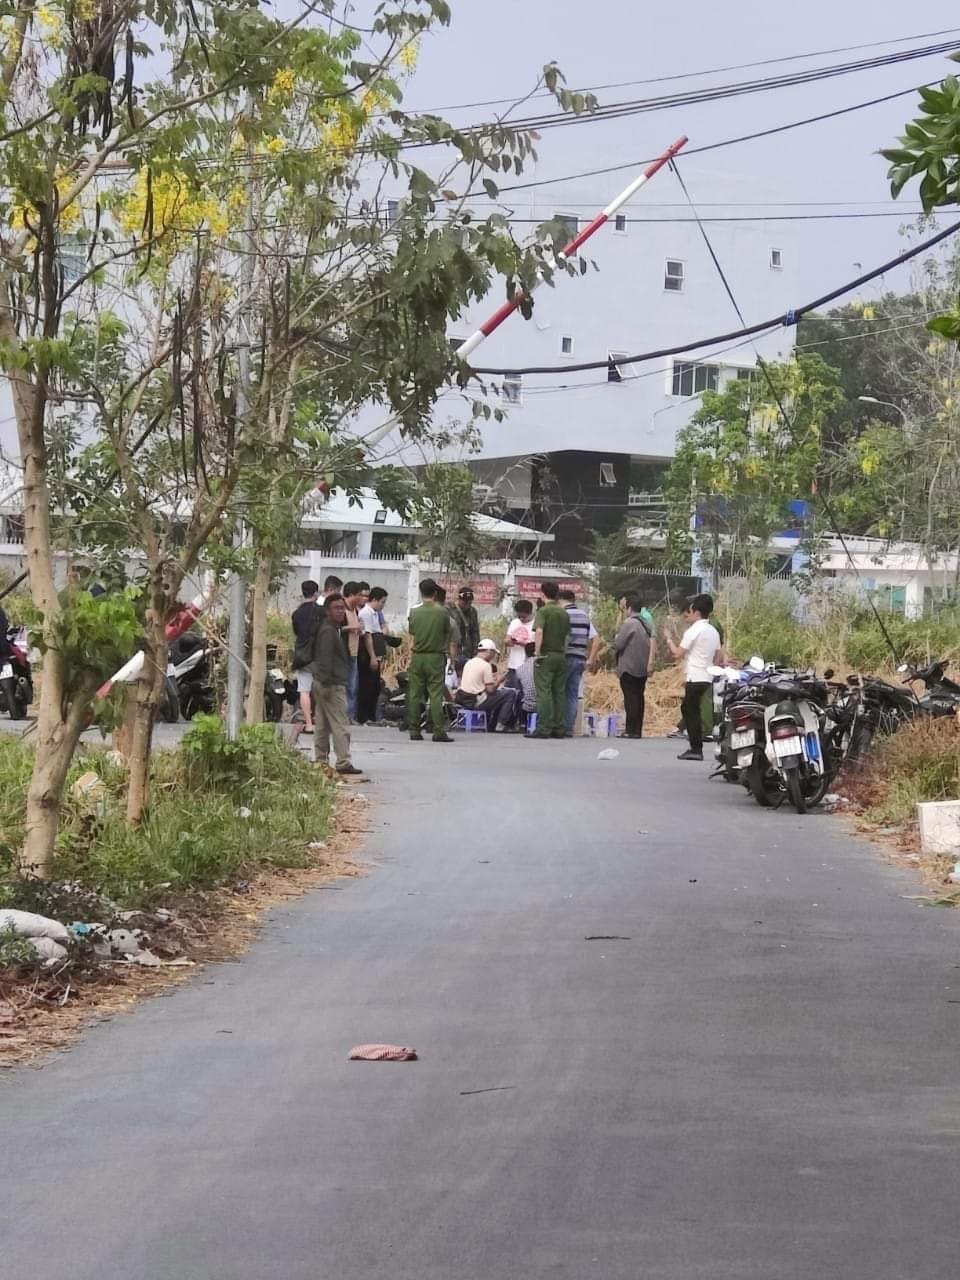 TP. Hồ Chí Minh: bắt giữ đối tượng tấn công tài xế xe ôm cướp tài sản